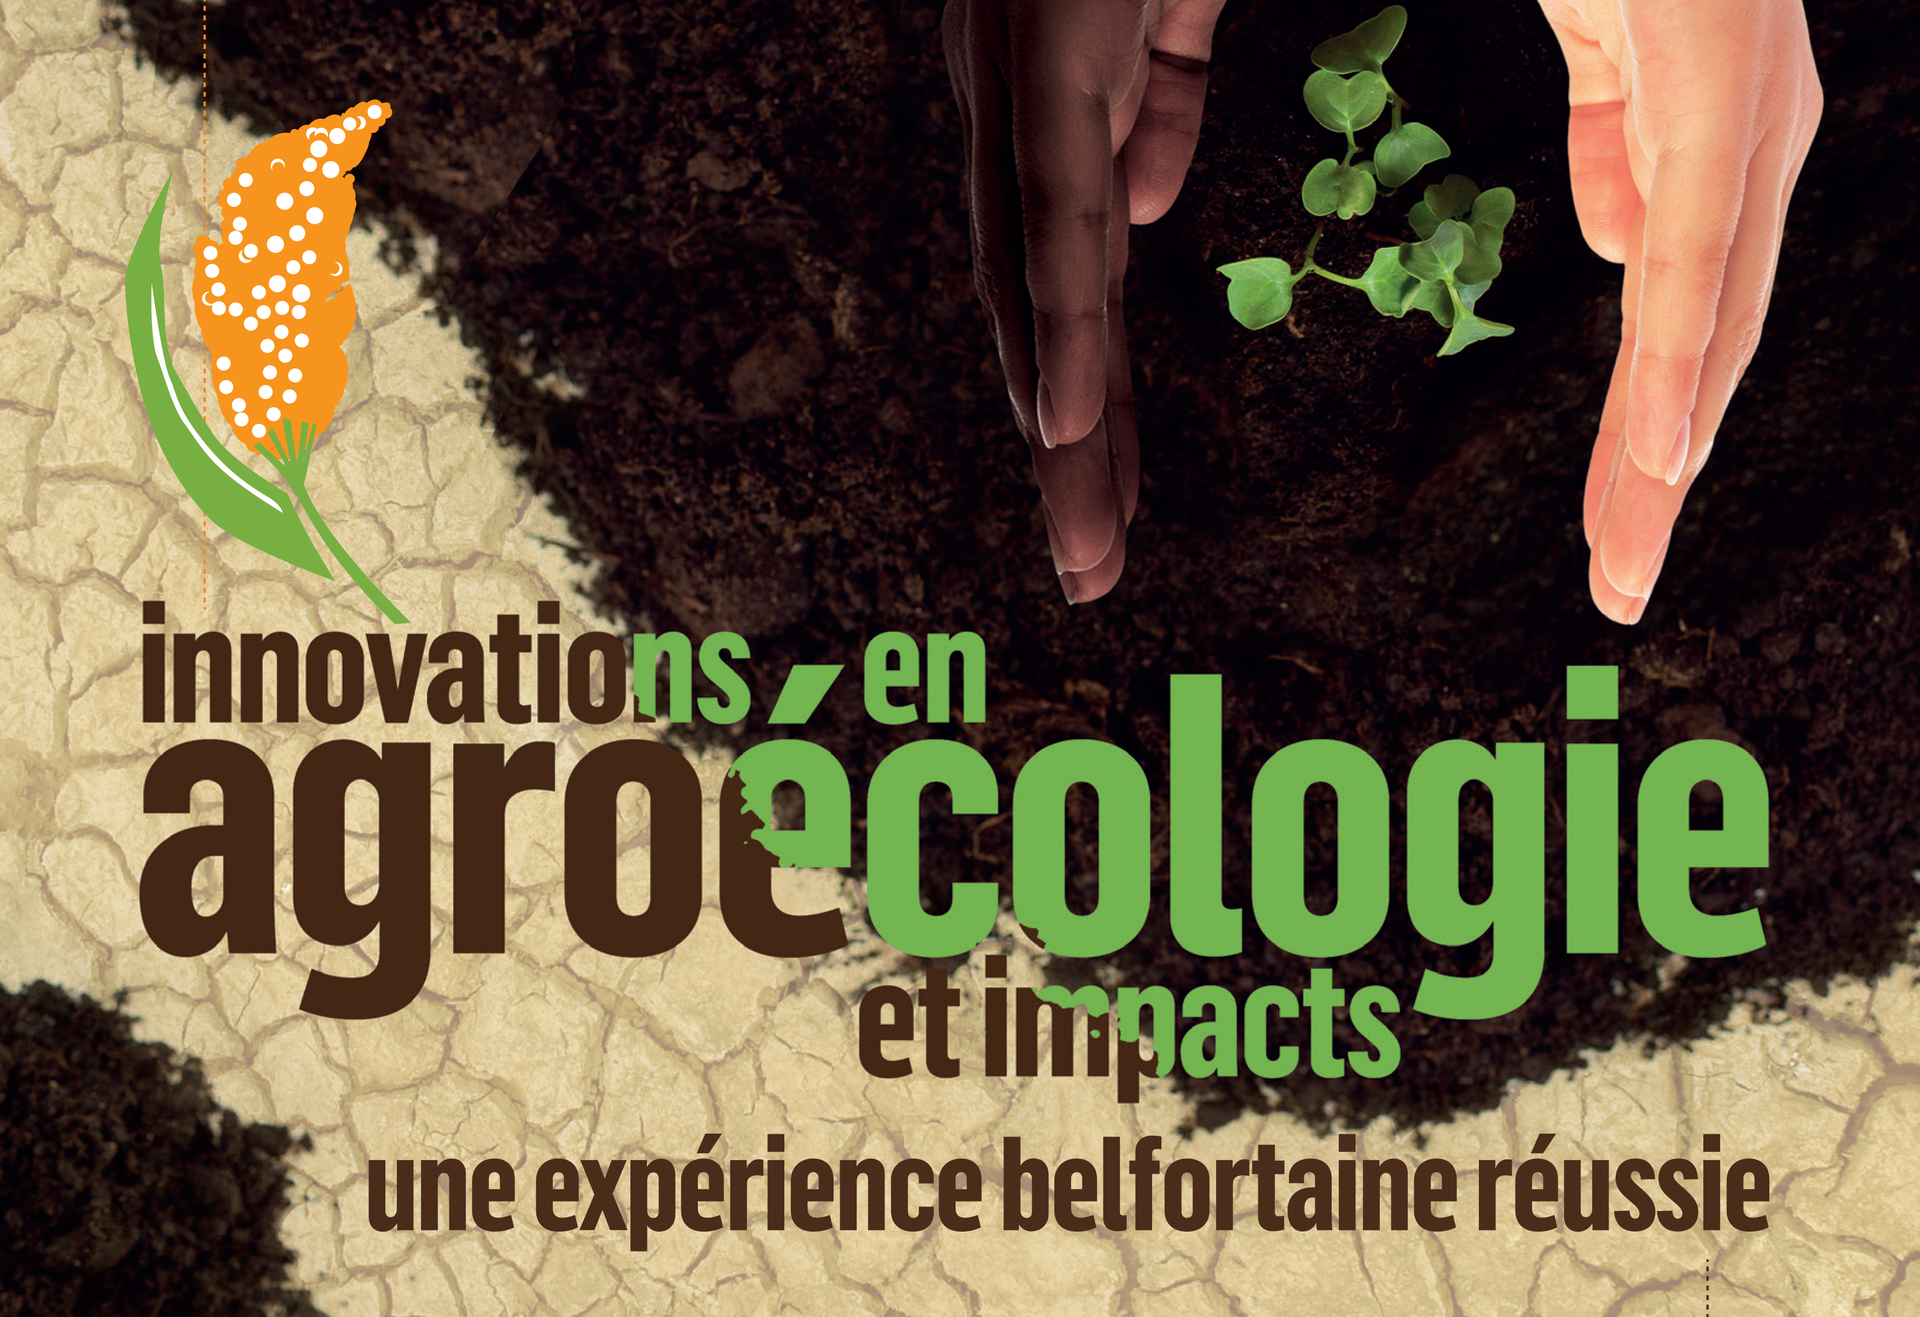 Agroécologie : l’innovation belfortaine au Burkina Faso